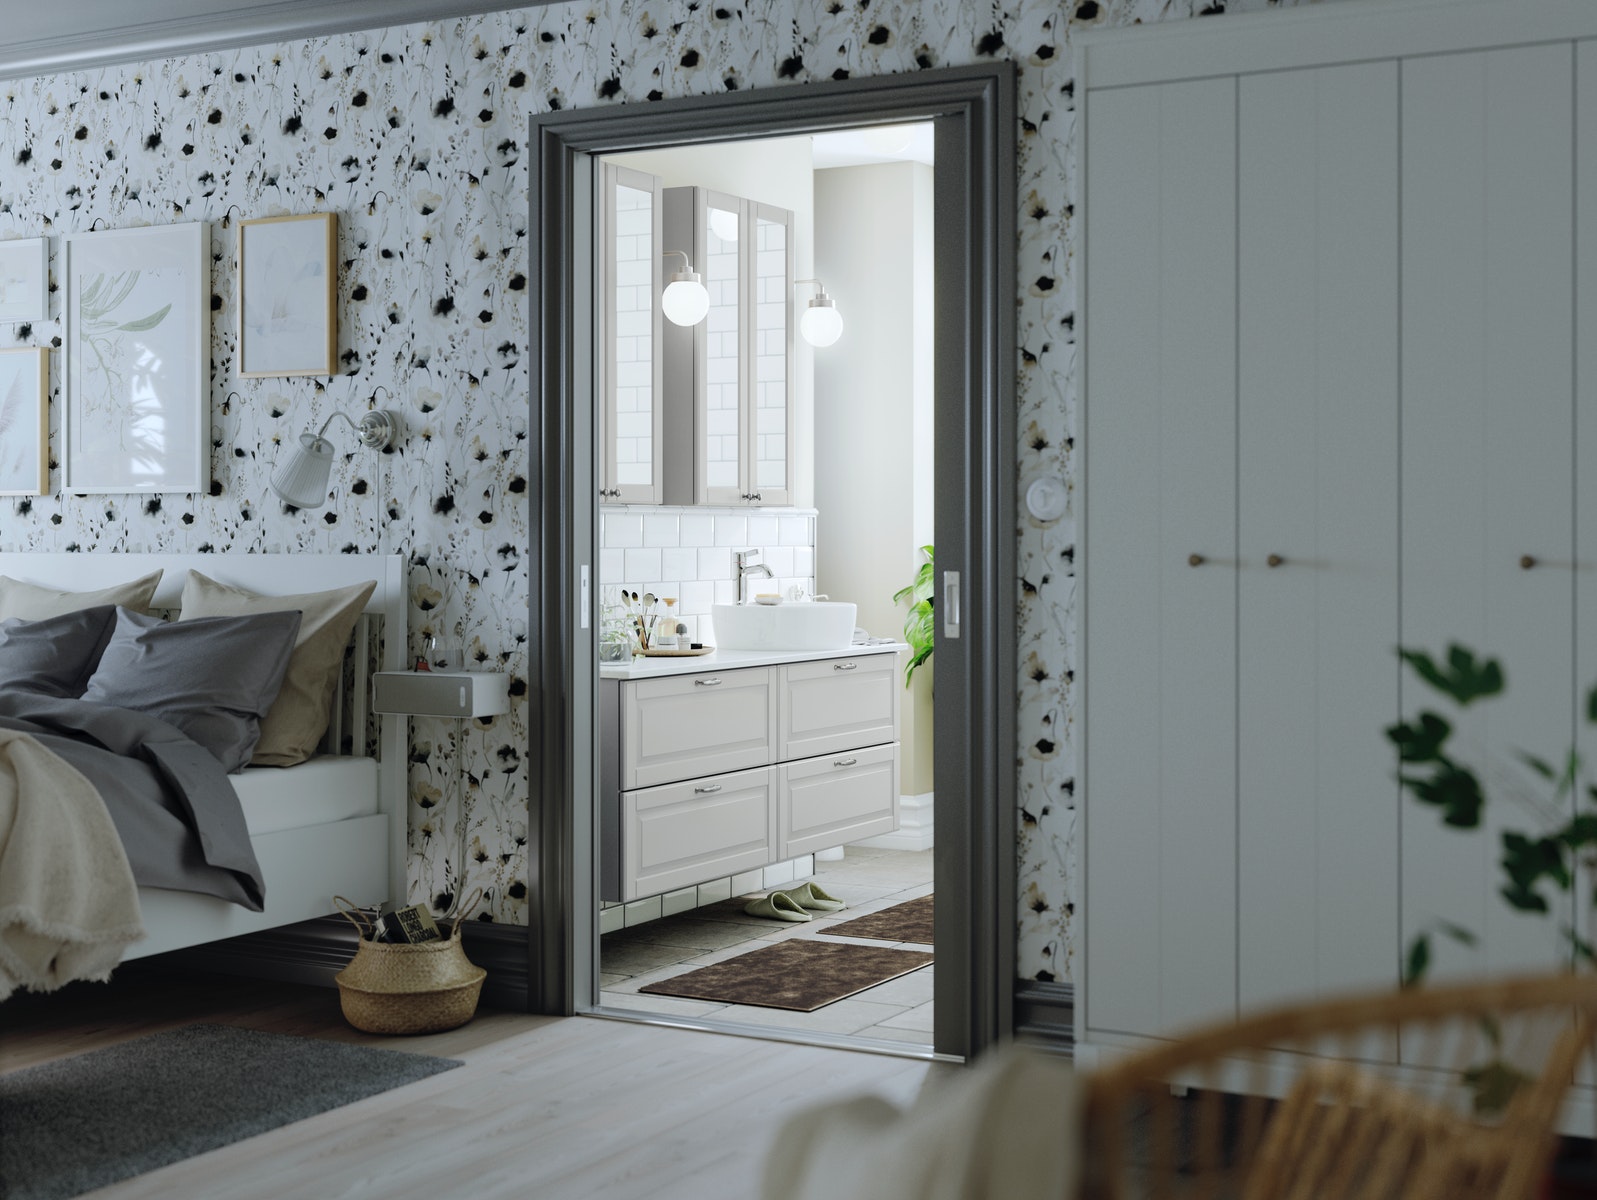 IKEA - A serene bathroom for smooth everydays